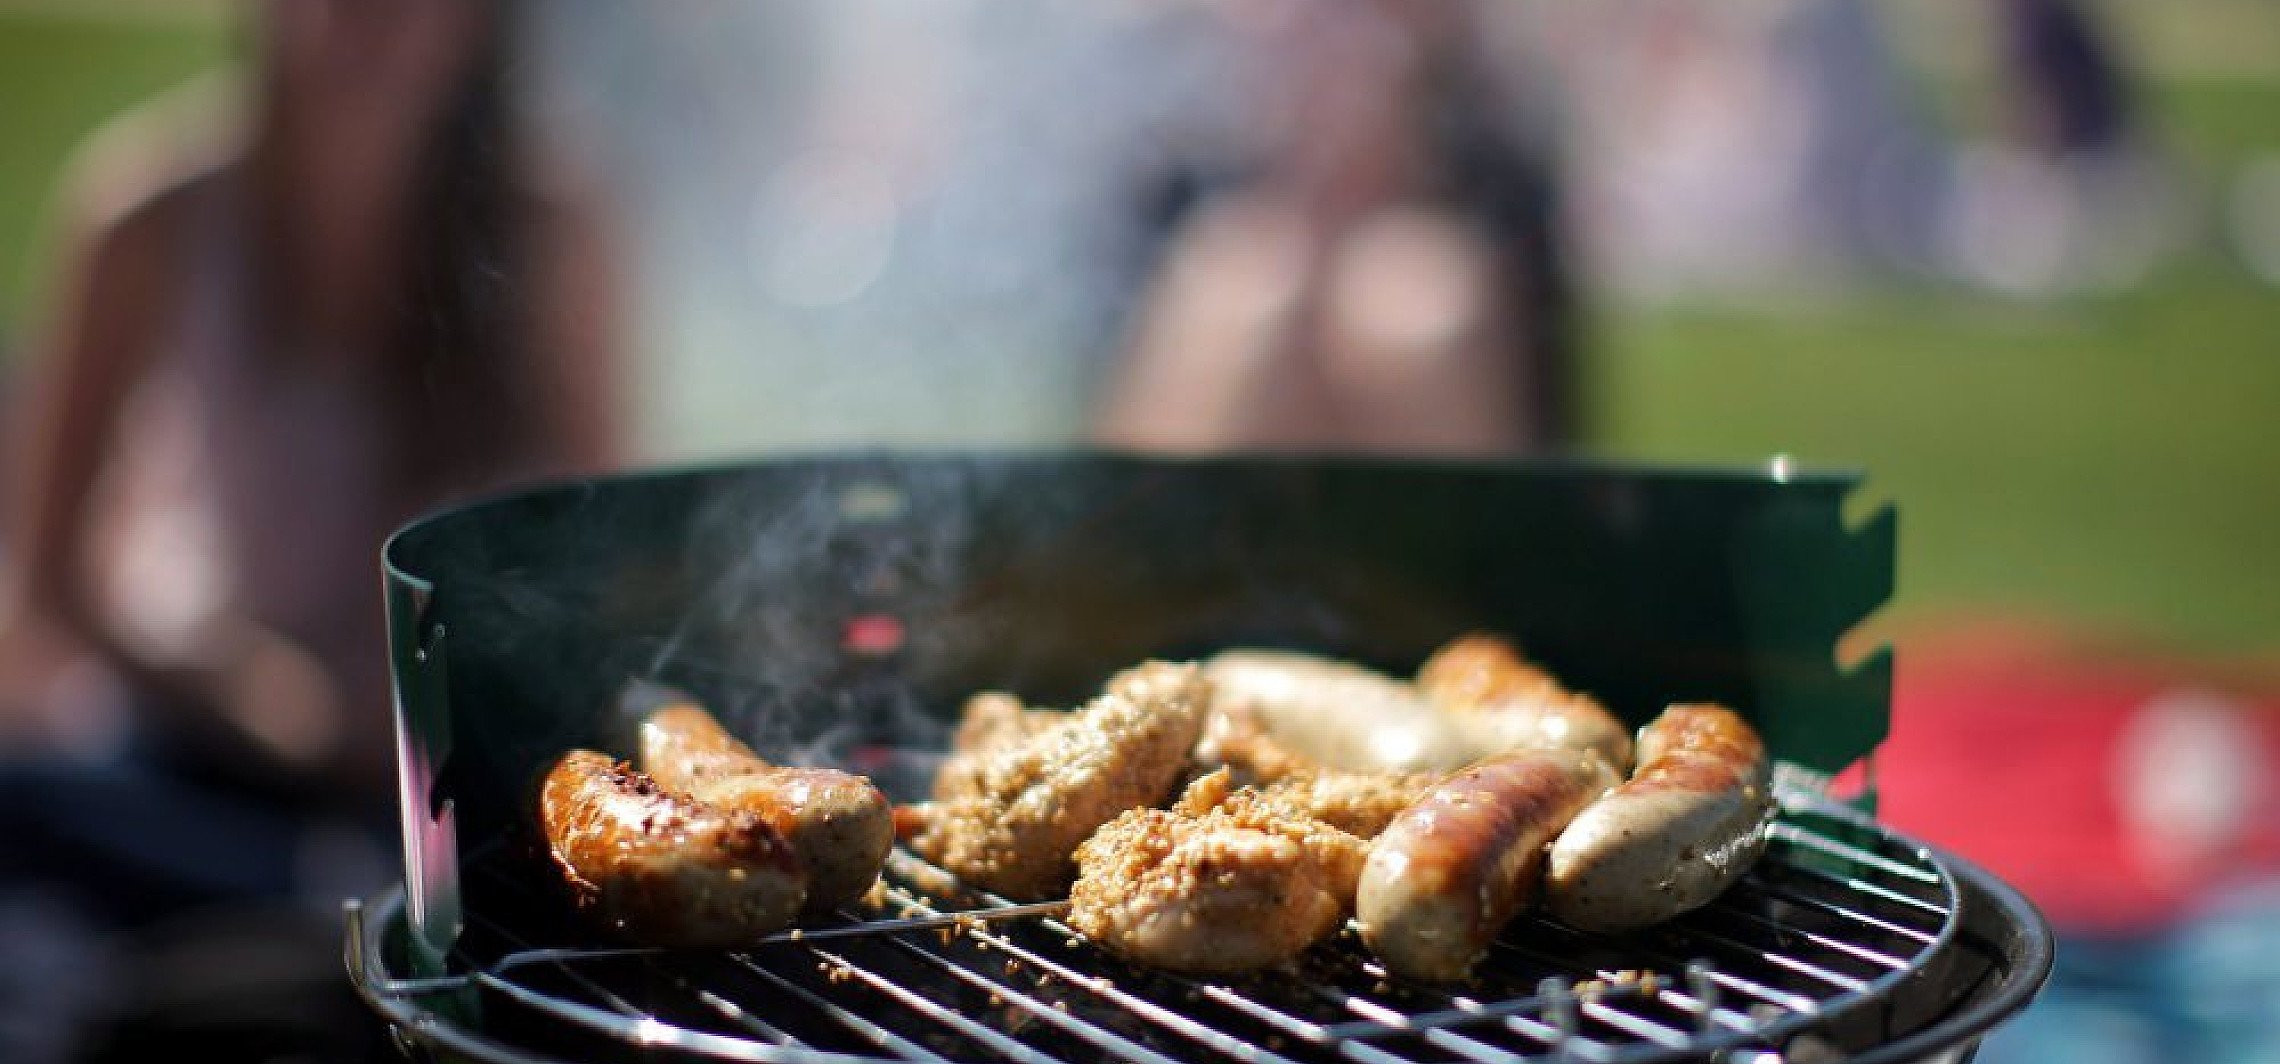 Pieczone, grillowane i smażone mięso zawiera składniki szkodliwy dla serca i układu krążenia